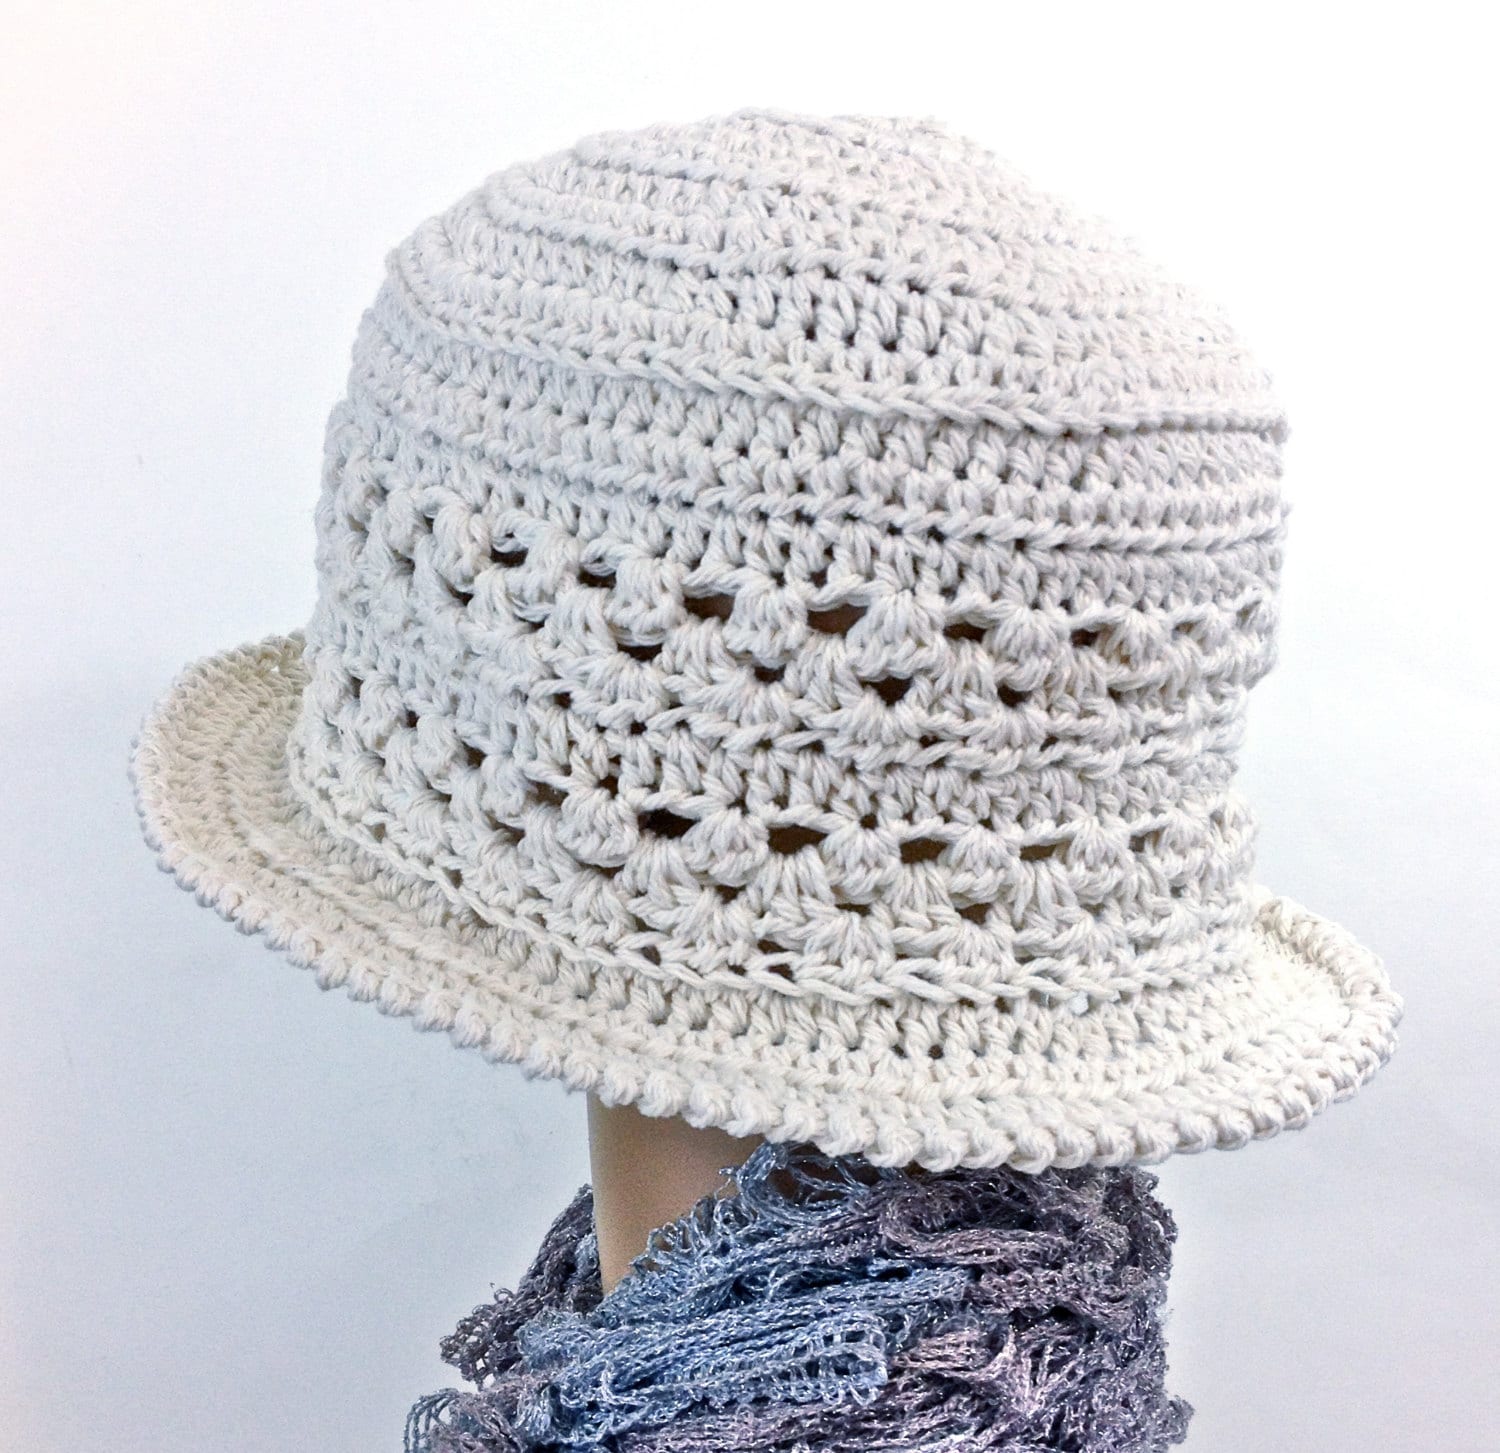 Cotton Cloche Hat Natural White Cotton Spring Summer Garden - Etsy